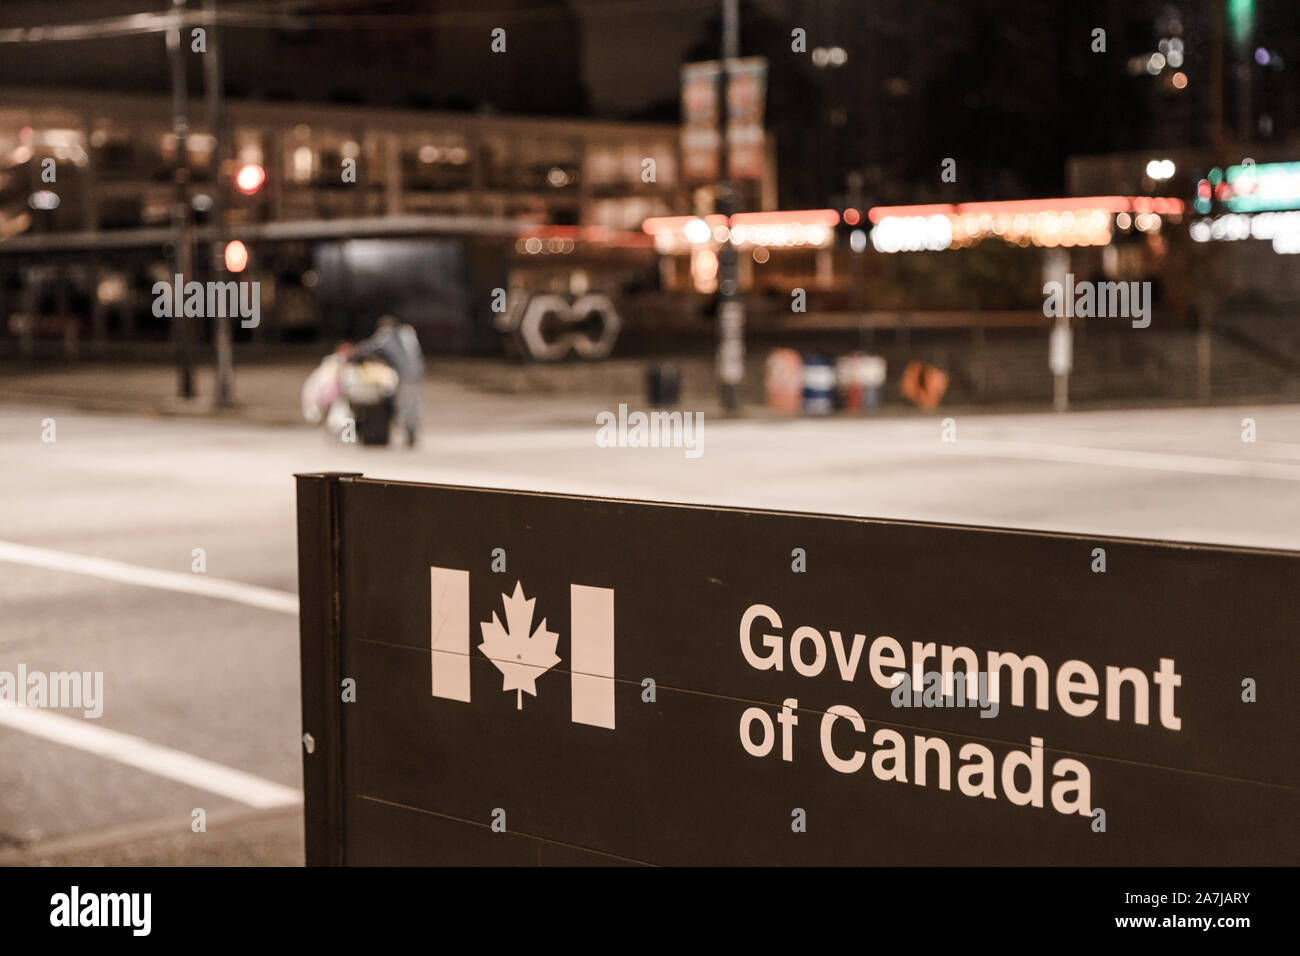 VANCOUVER, BC, Kanada - Oktober 05, 2019: Ein obdachloser Mann mit einem Warenkorb, unscharf, vorbei an einer Regierung von Kanada, Gegenstand des Fokus, der Bund Stockfoto